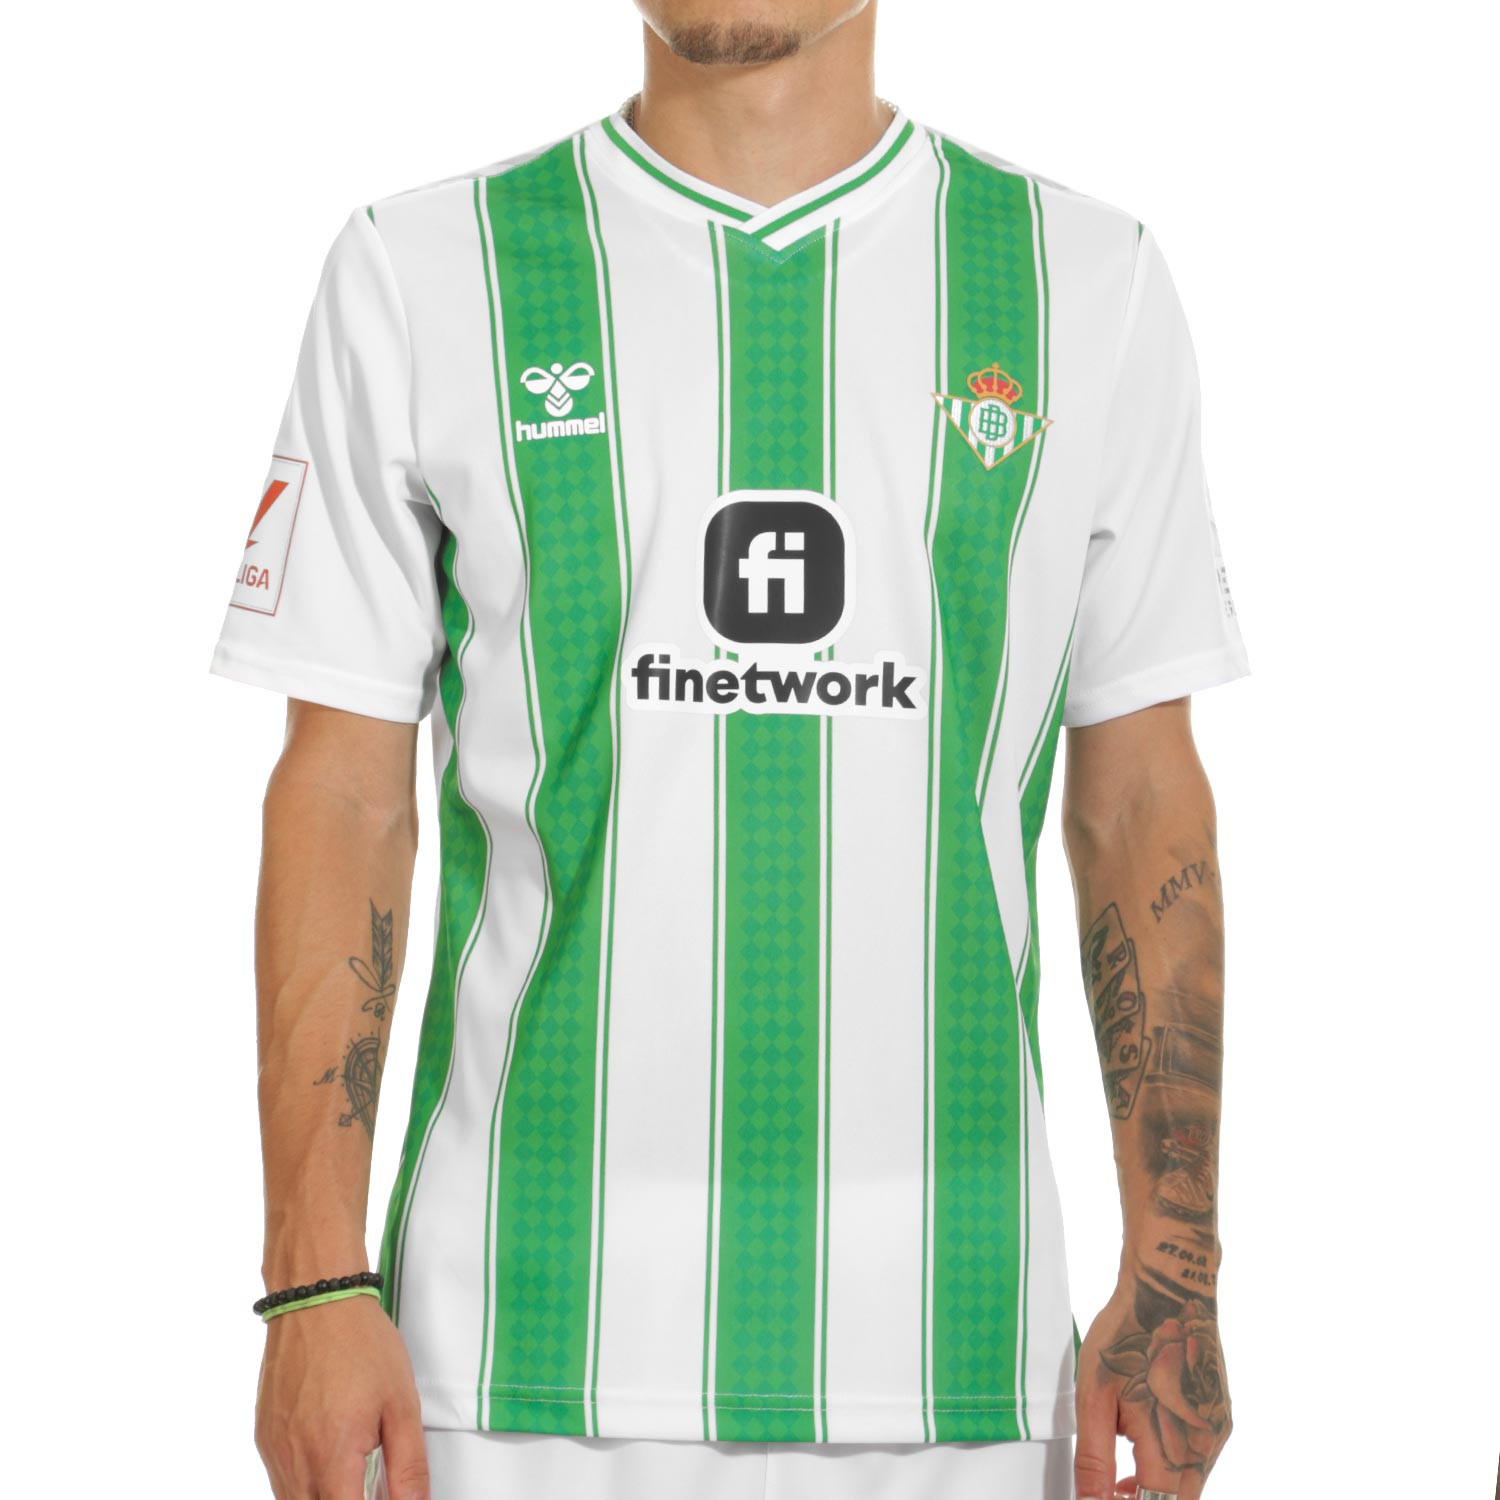 La vuelta de tuerca definitiva en los diseños de la nueva camiseta Hummel  del Betis - Estadio Deportivo